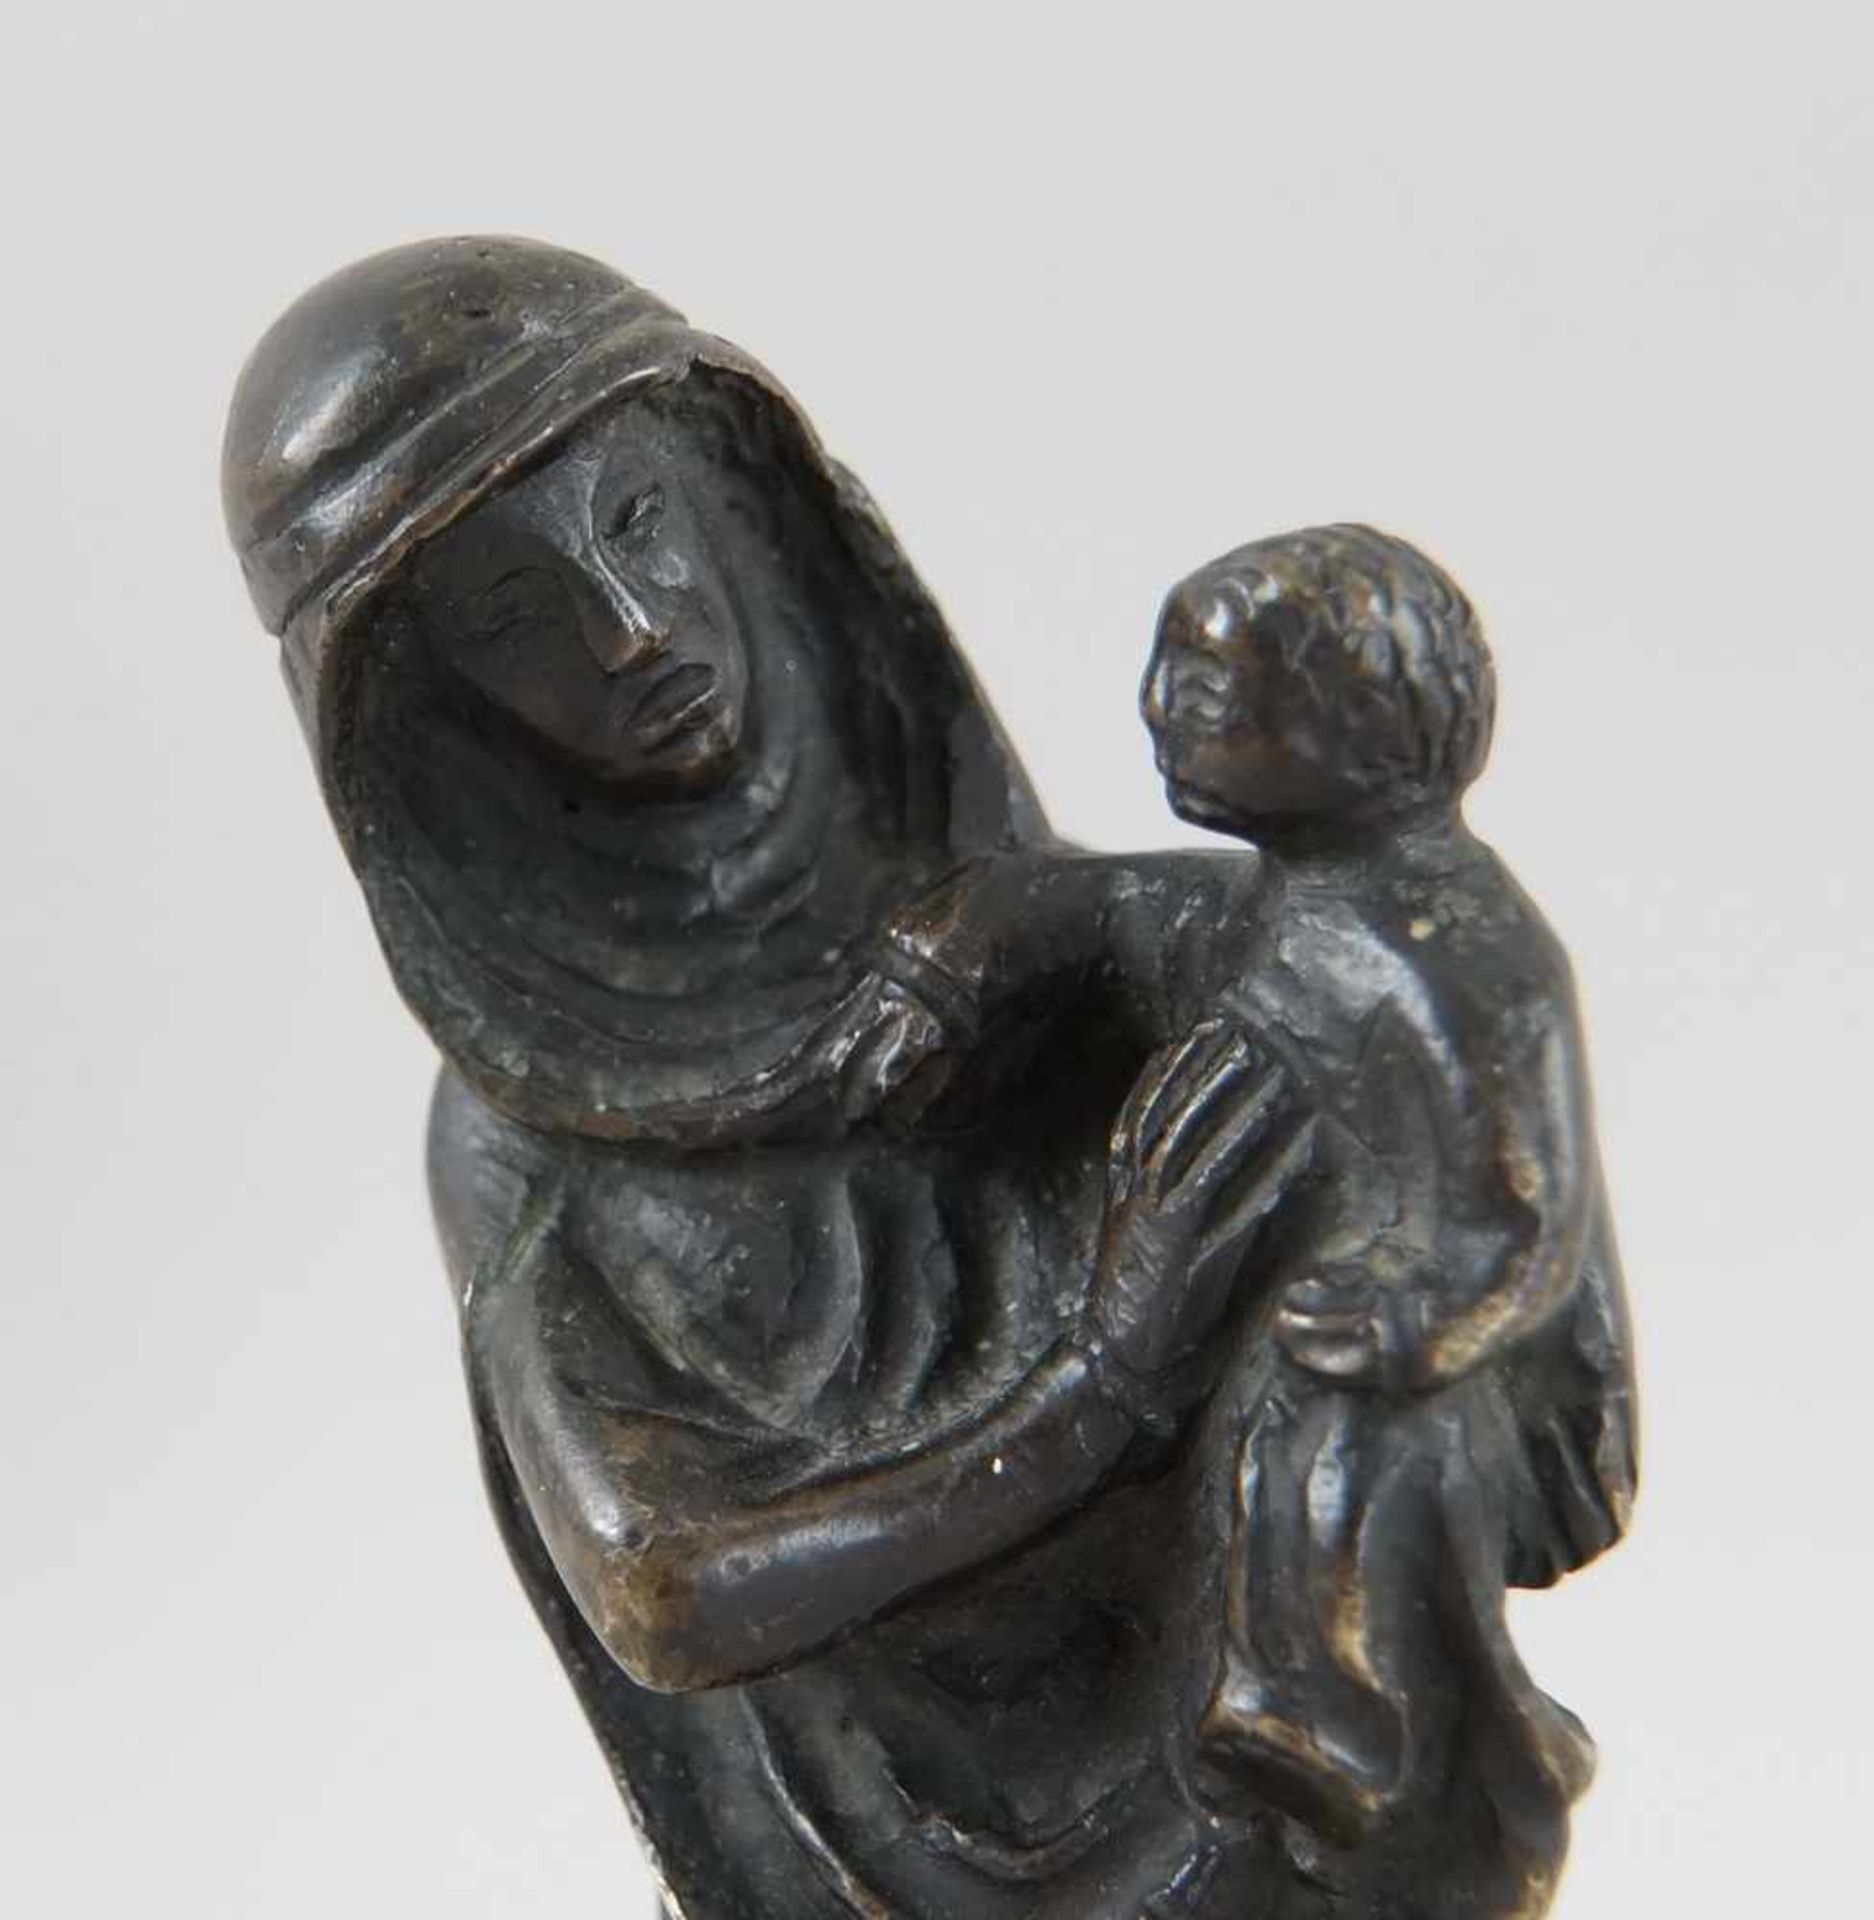 Gotische Skulptur einer Madonna mit Kind, Bronze, wohl um 1500, H 17,5 cm - Bild 2 aus 8